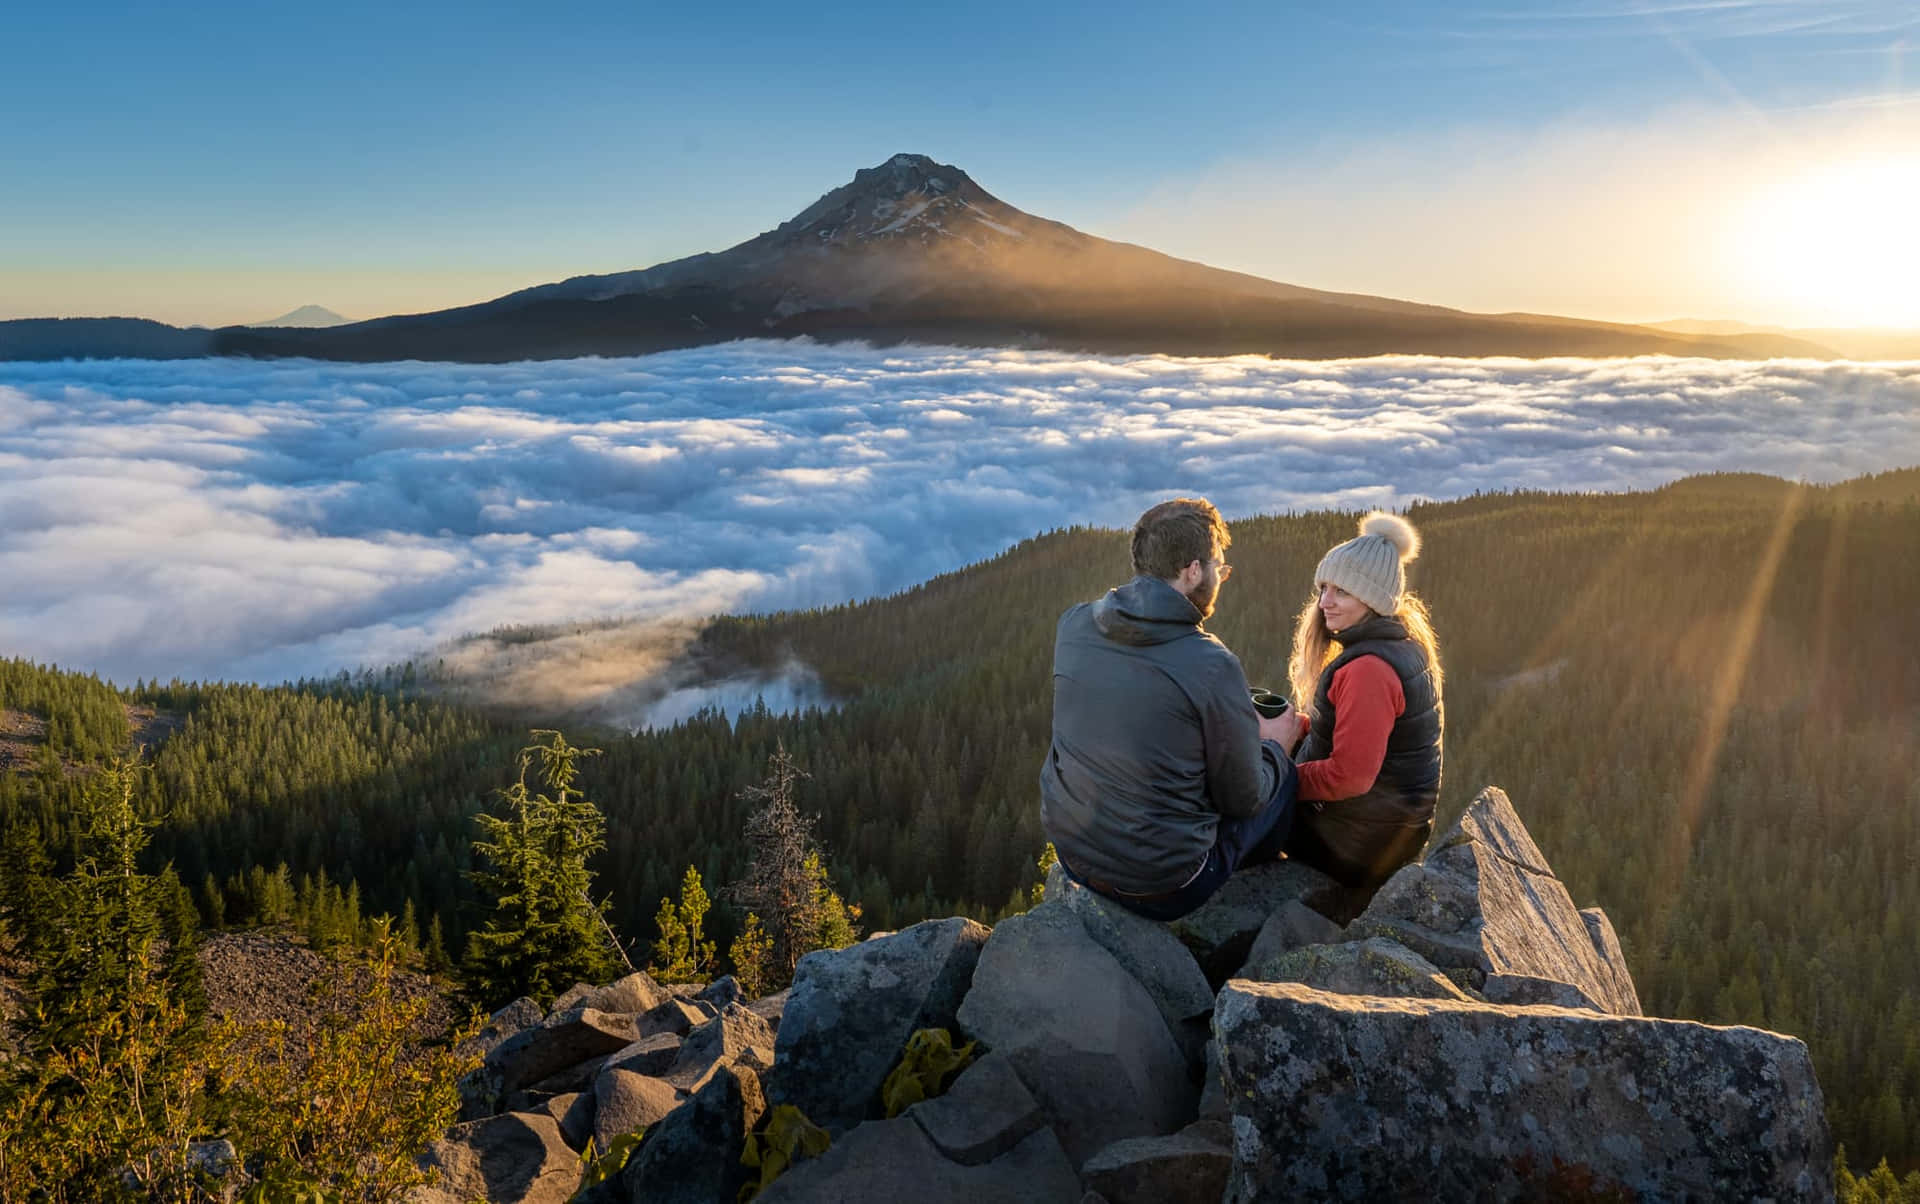 Denmajestätiska Mount Hood I Oregon Imponerar På Resenärer Med Sin Glaciärtäckta Topp.